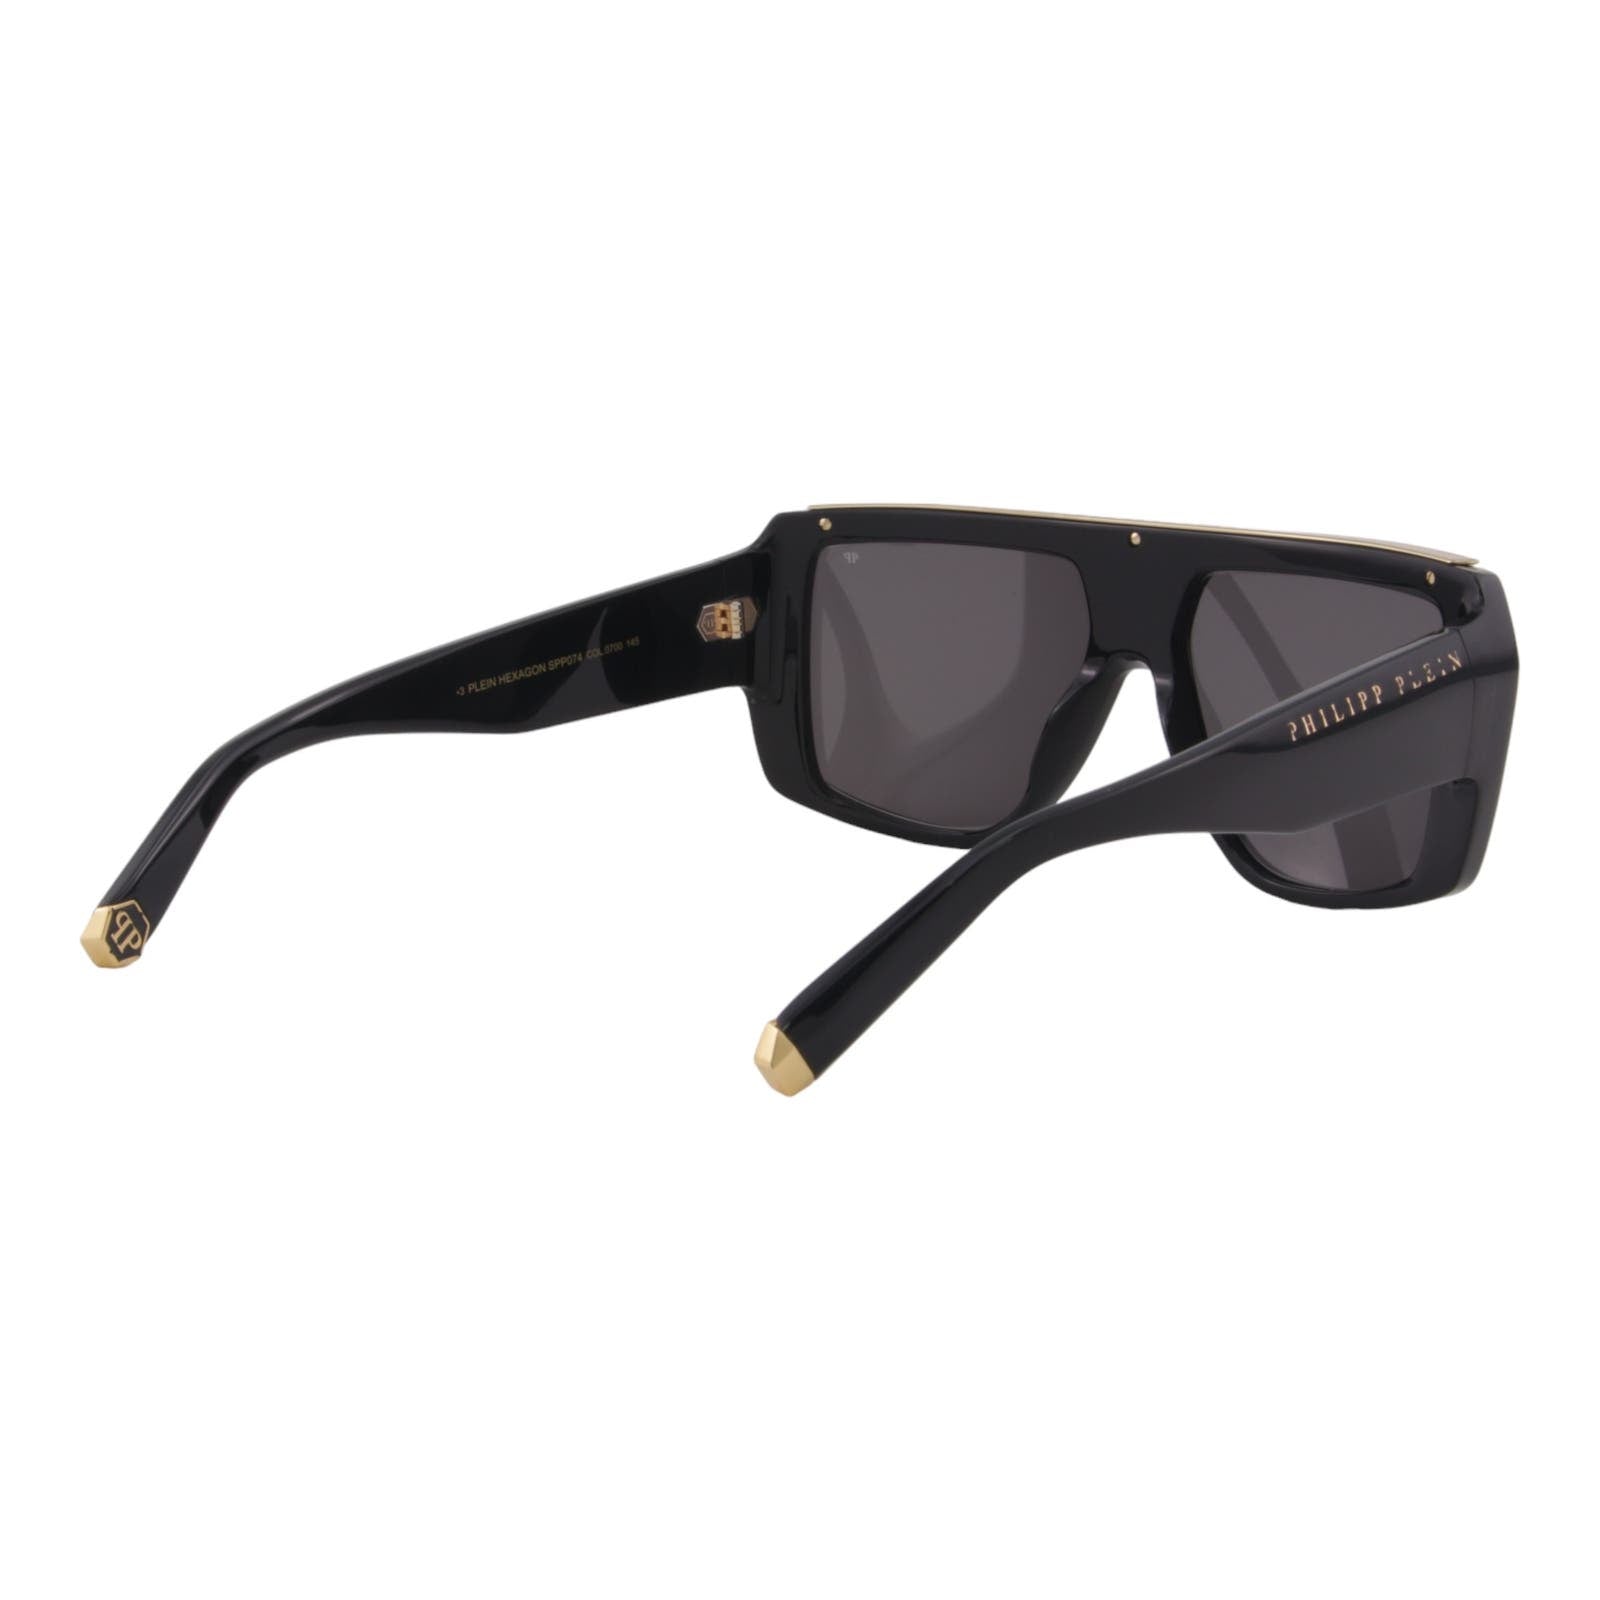 Men Designer Sunglasses SPP074-0700 Stylish Black Square Frame Gray Lens